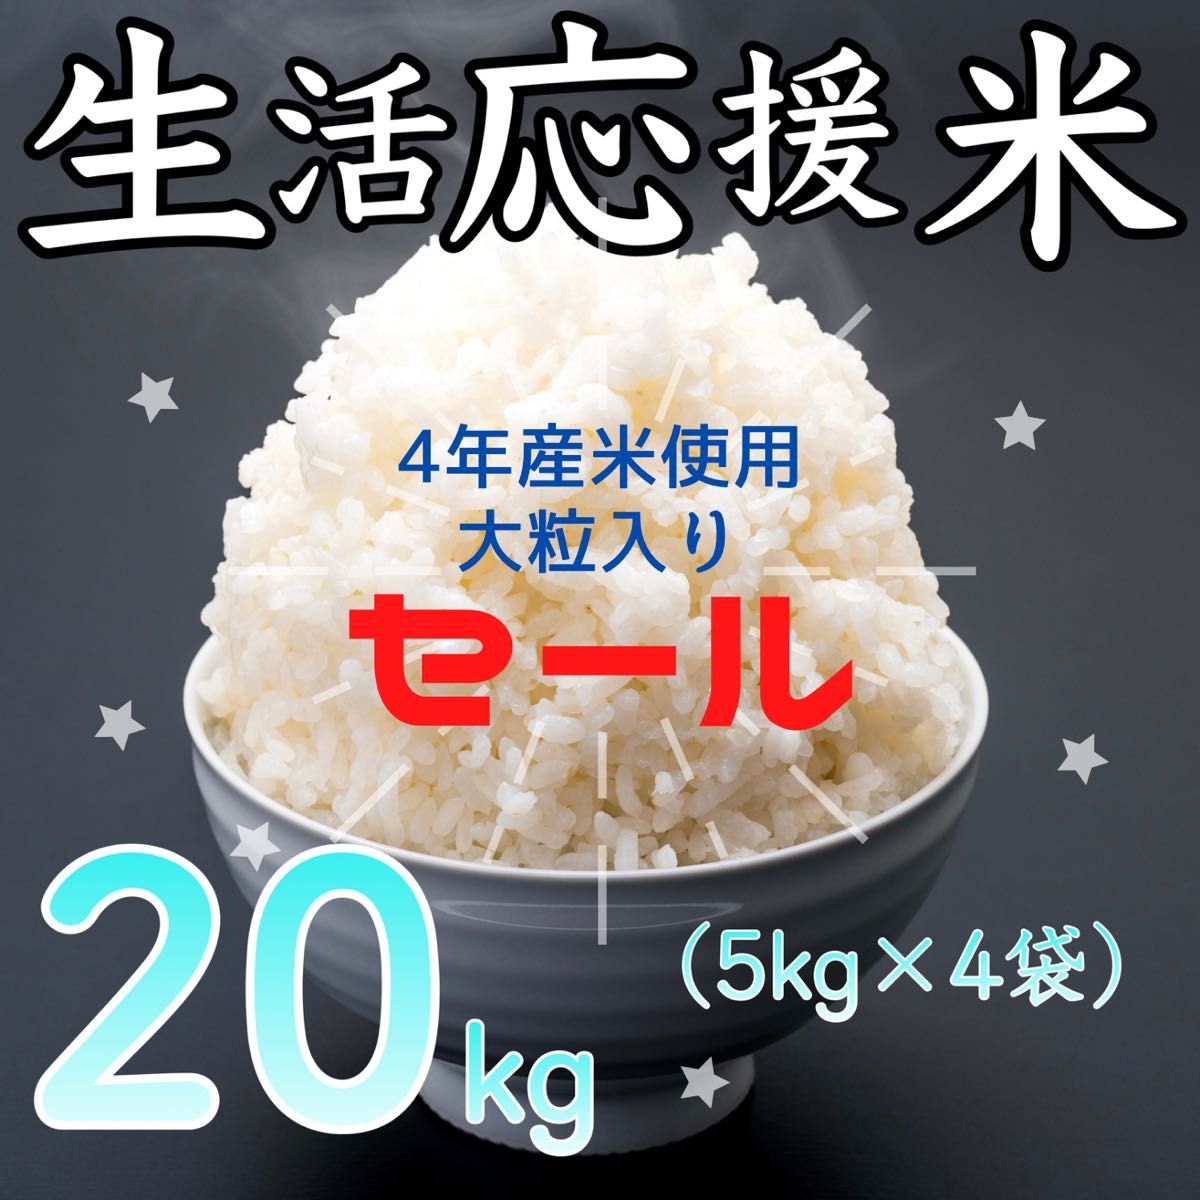 誕生日/お祝い きれいな 良質上白米 24kg 白米 送料込み 10kg×2+4kg HJ4